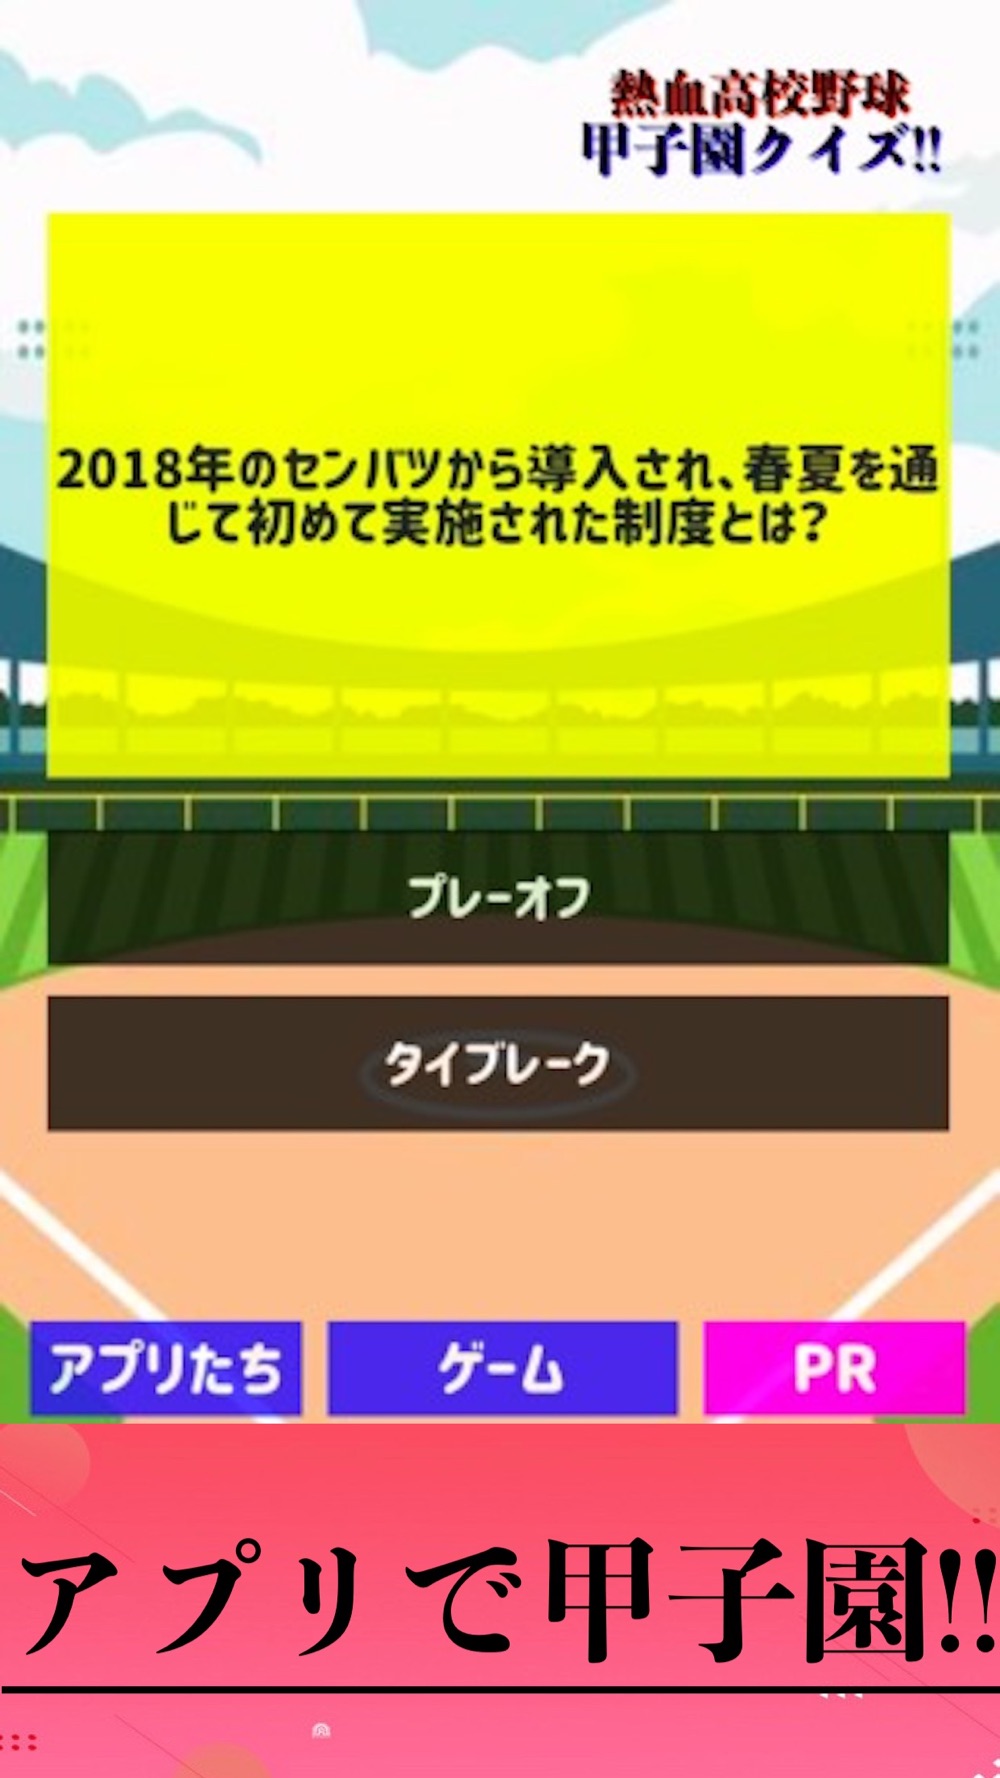 甲子園 高校野球 ゲーム 草野球 Free Download App For Iphone Steprimo Com